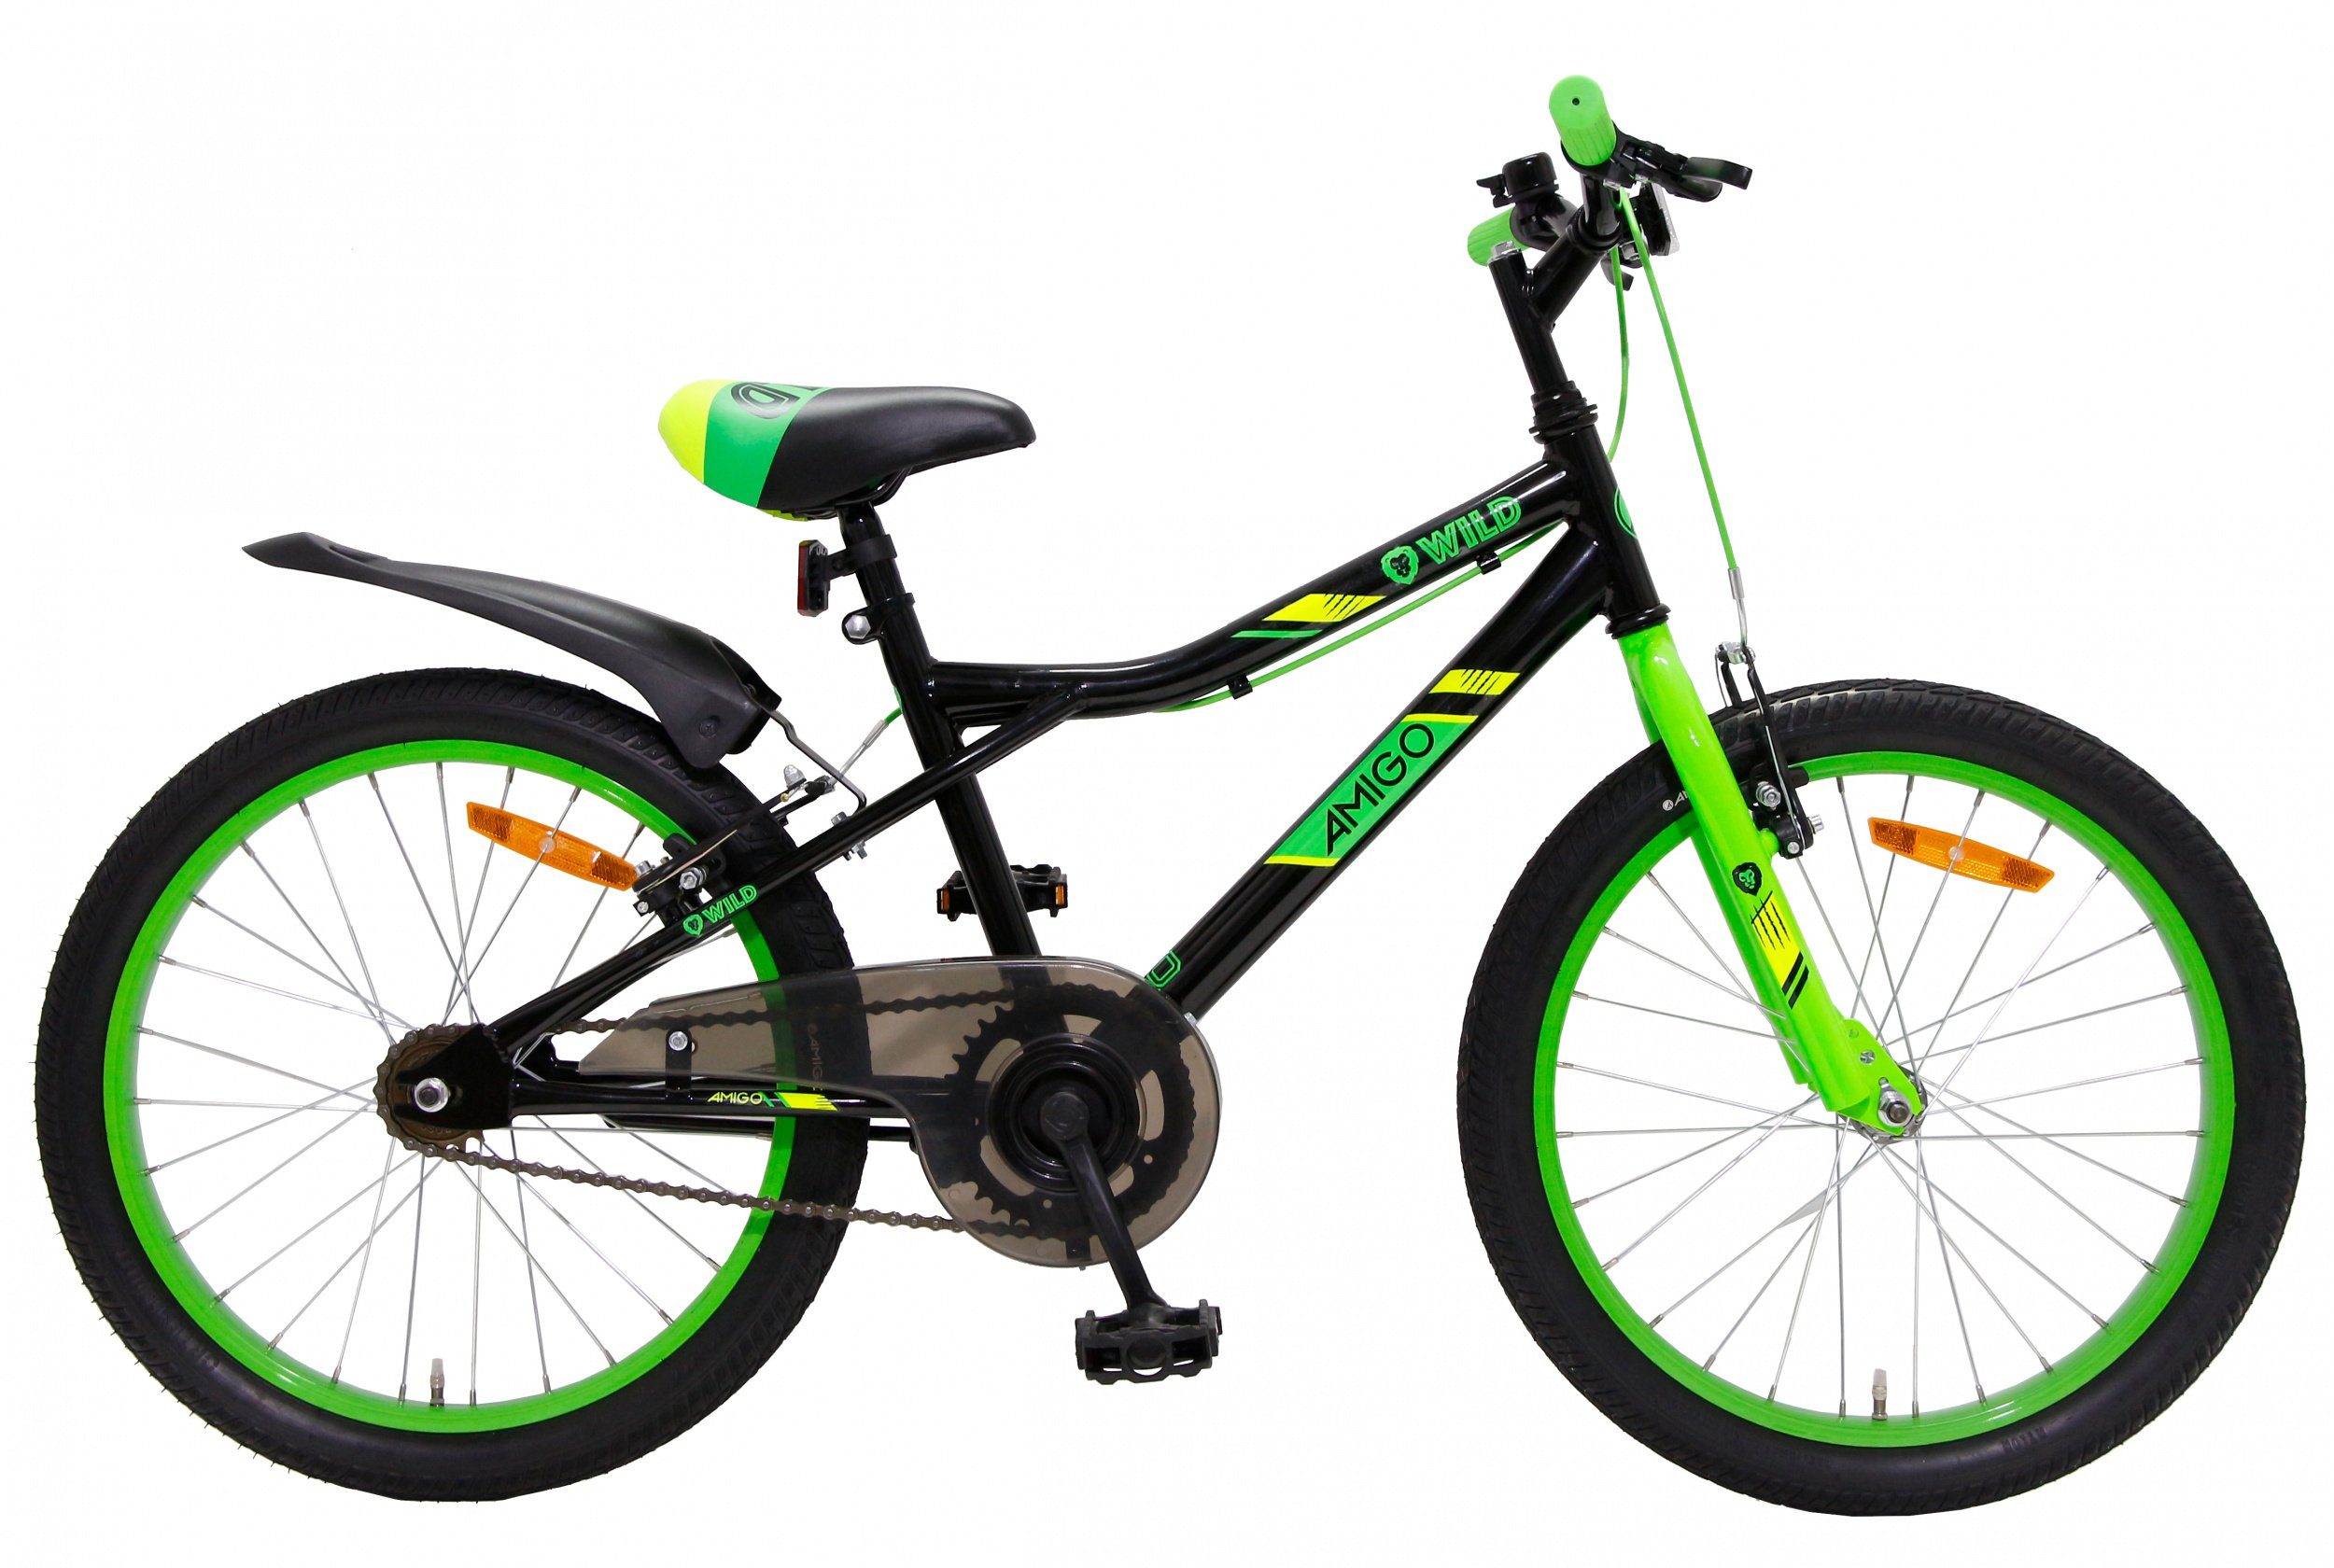 AMIGO Kinderfahrrad Mountainbike • 20 Zoll Jungen Fahrrad • Felgenbremse •  Alter 6 - 8 Jahre • Schwarz/Grün, 1 Gang